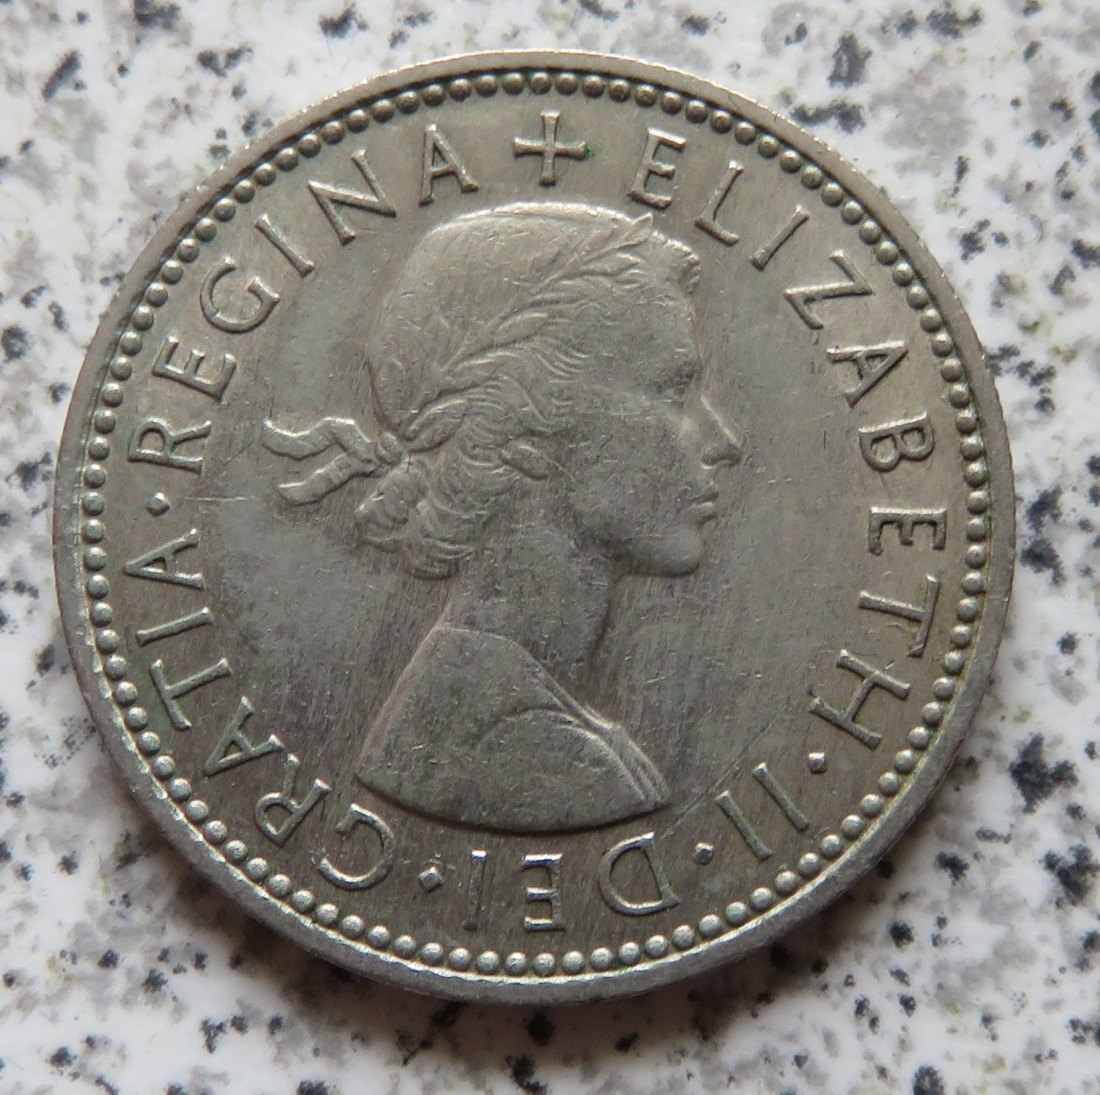  Großbritannien 1 Shilling 1963, Englisch (3)   